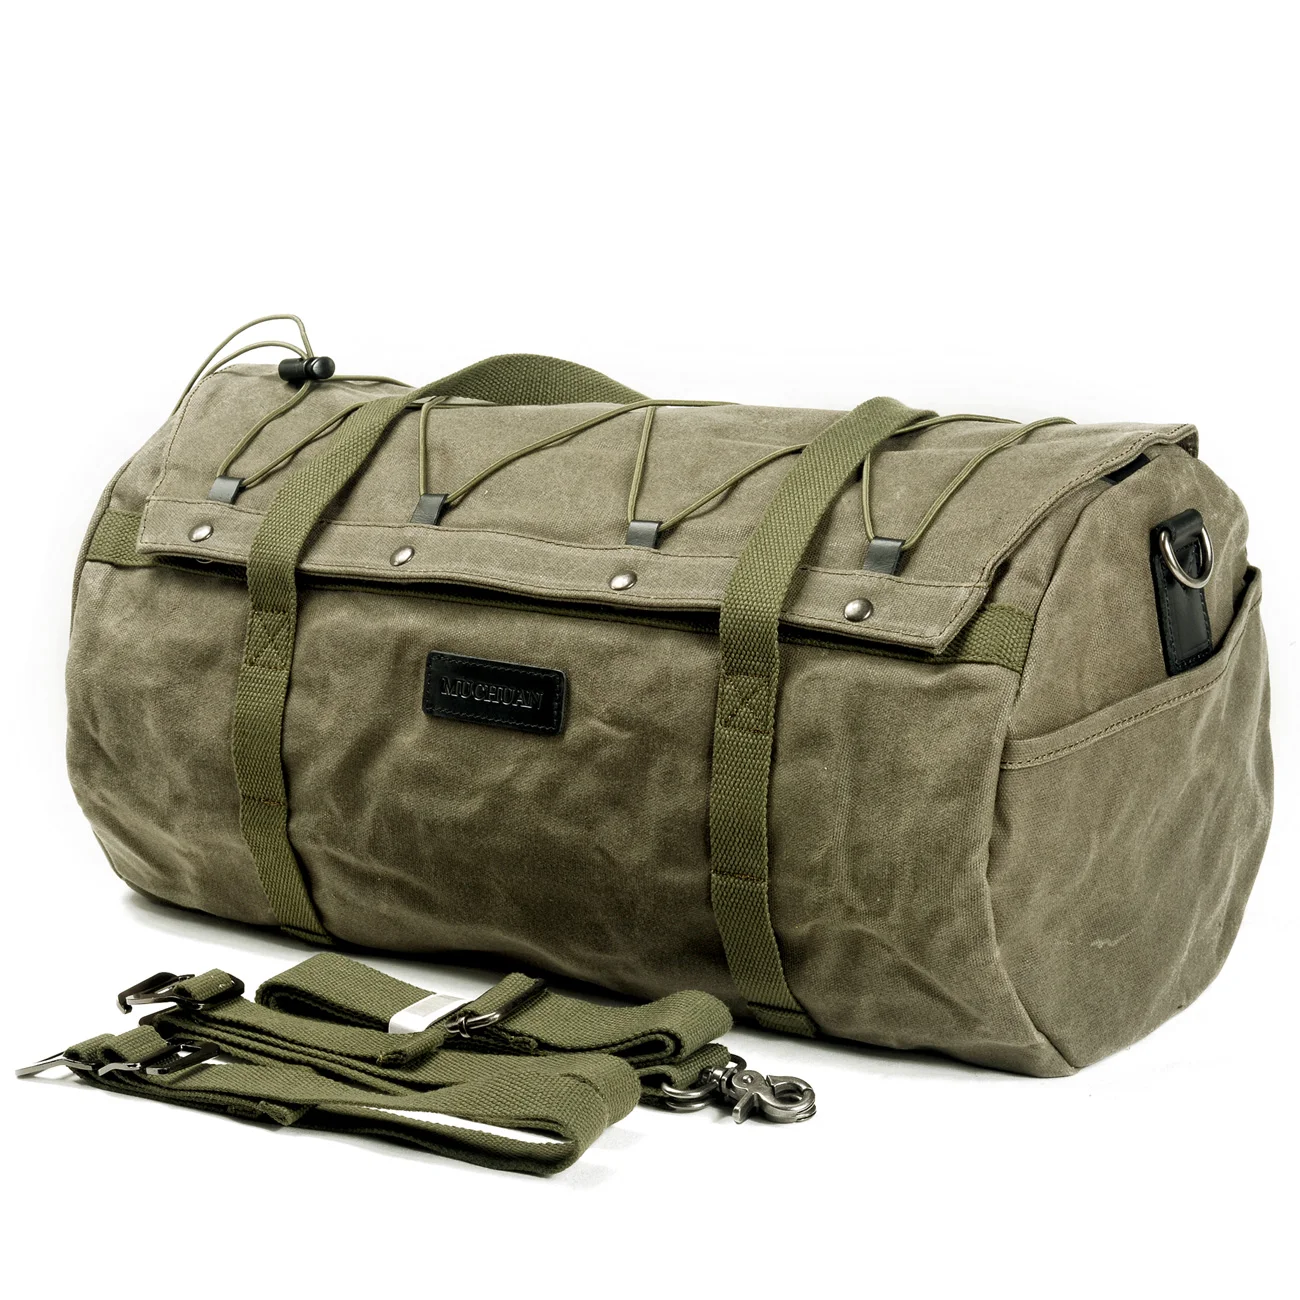 Men's Sports Leisure Portable Travel Bag Fitness Bag Men's Short-distance Business Shoulder Luggage Bag Travel Tote Bag